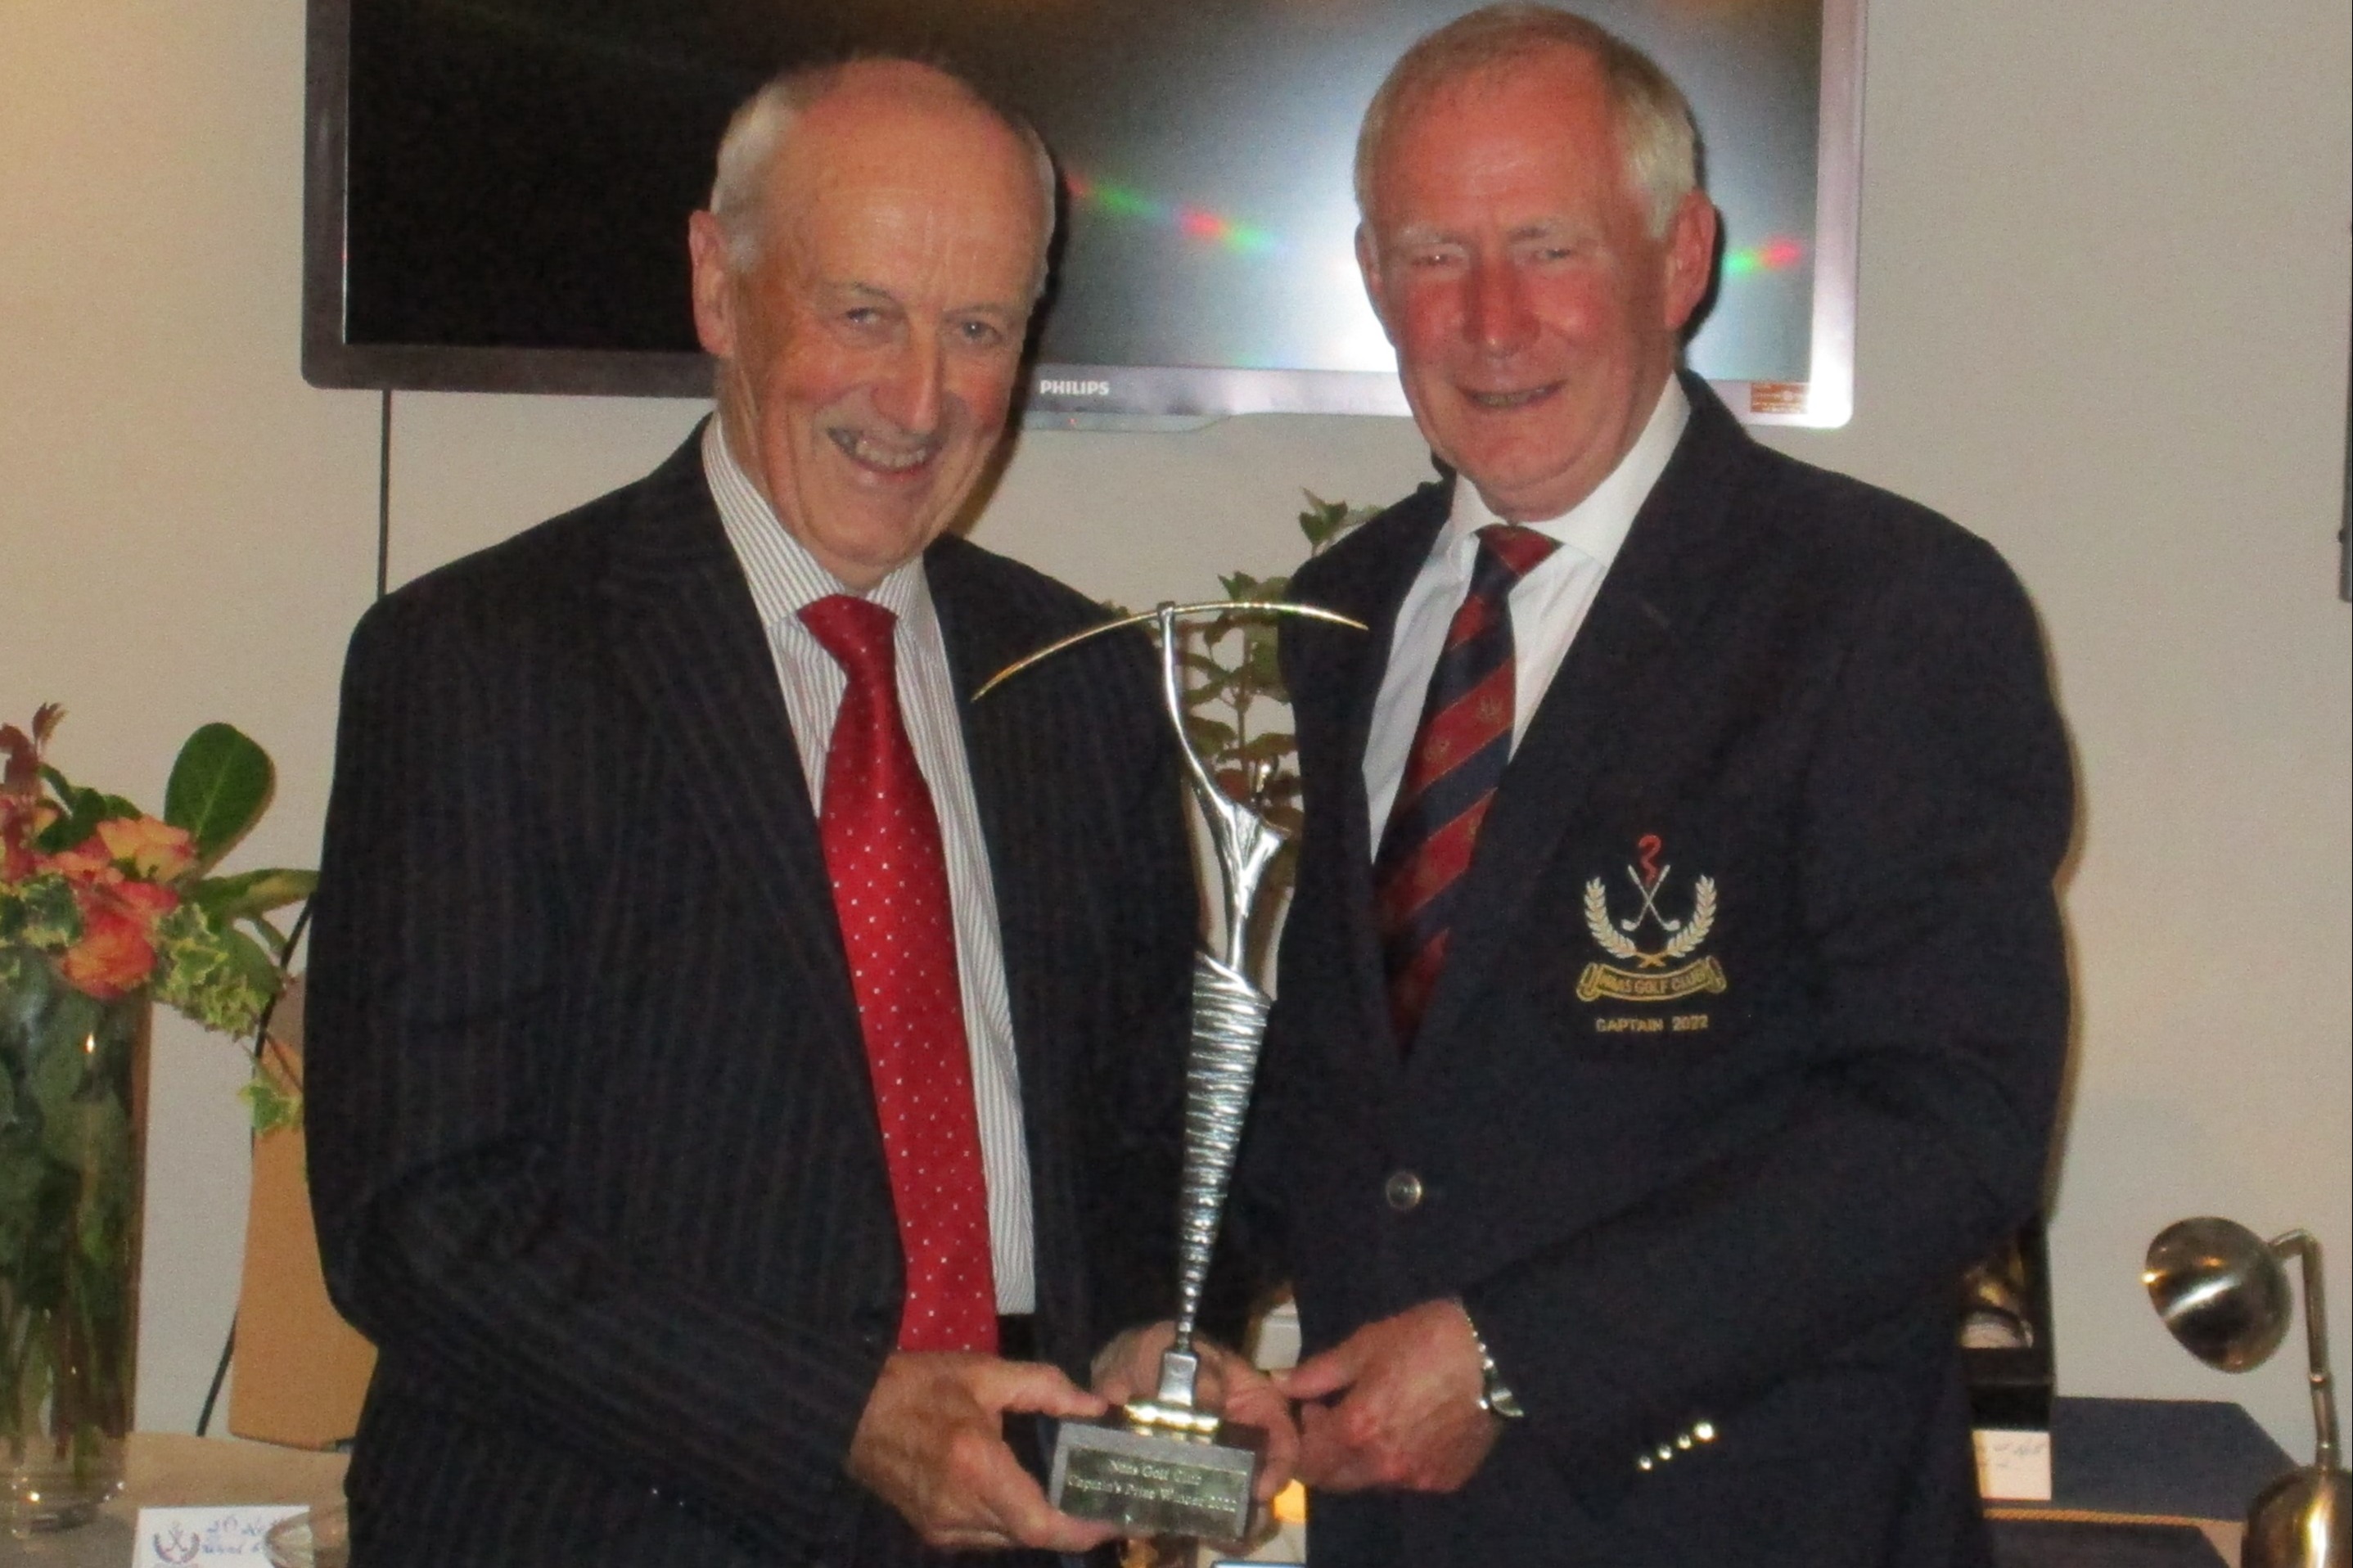 Captain Clive's Prize Winner: Tony Jones